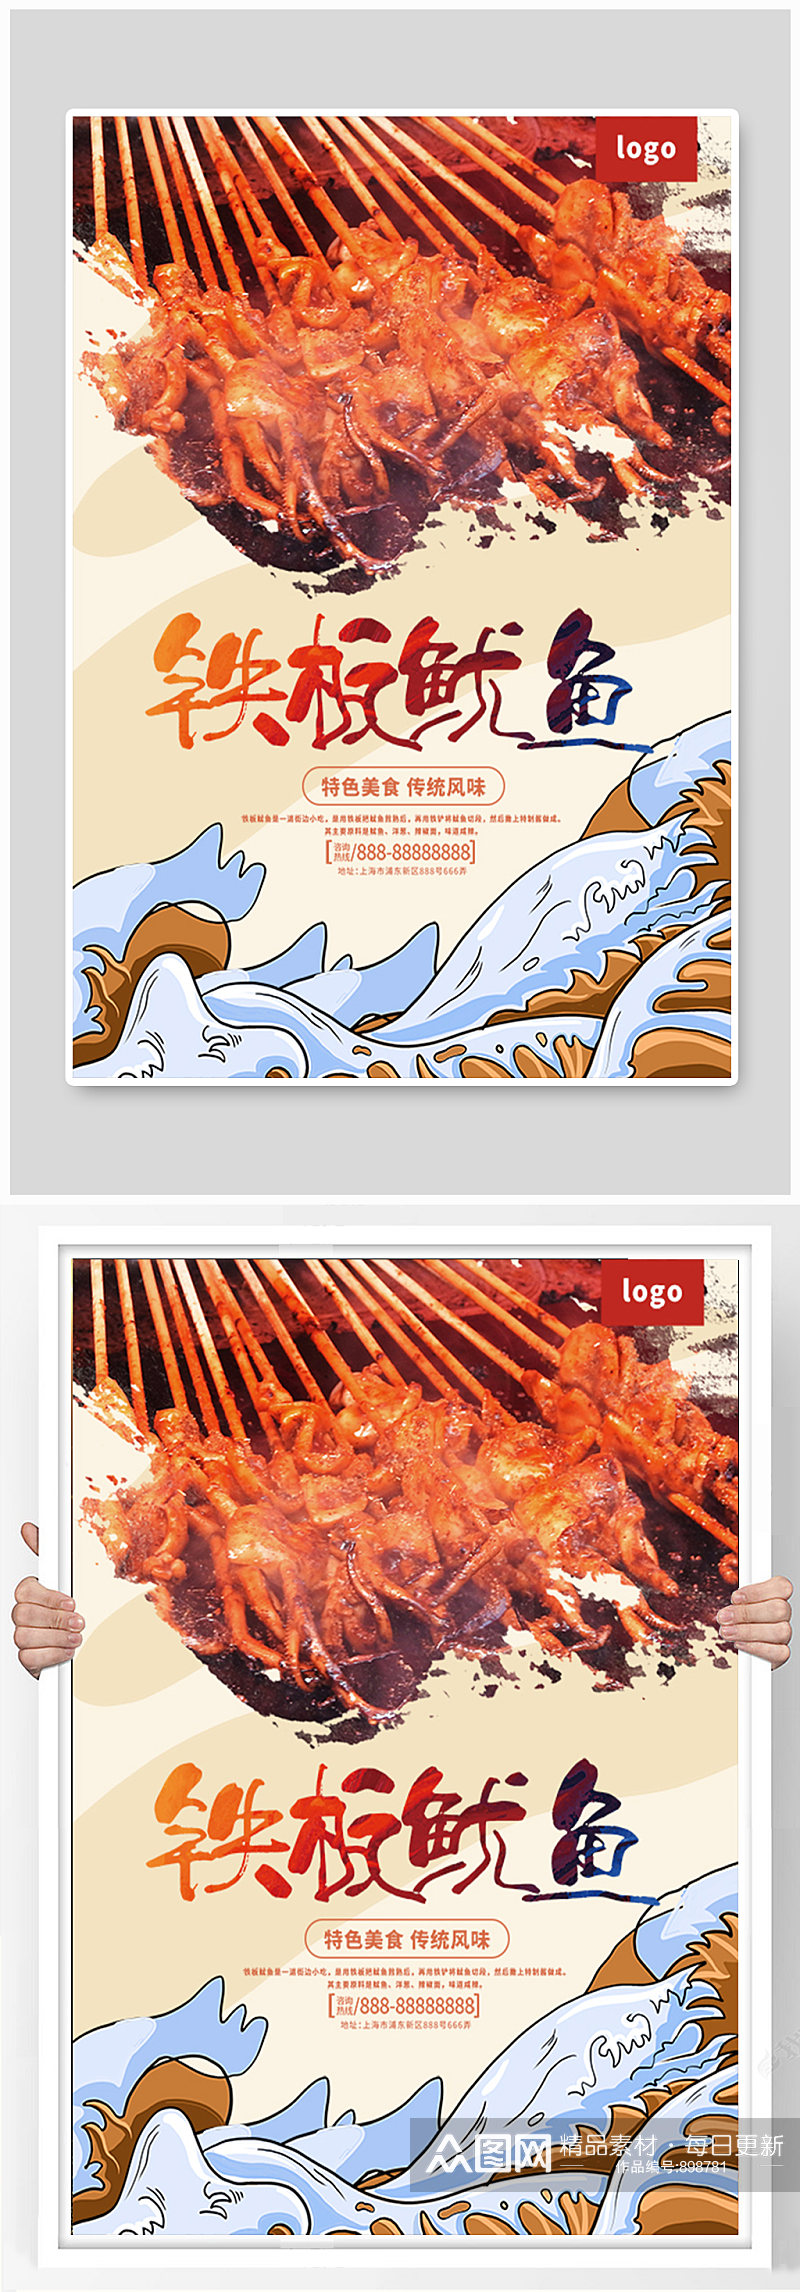 铁板鱿鱼烧烤美食宣传海报素材